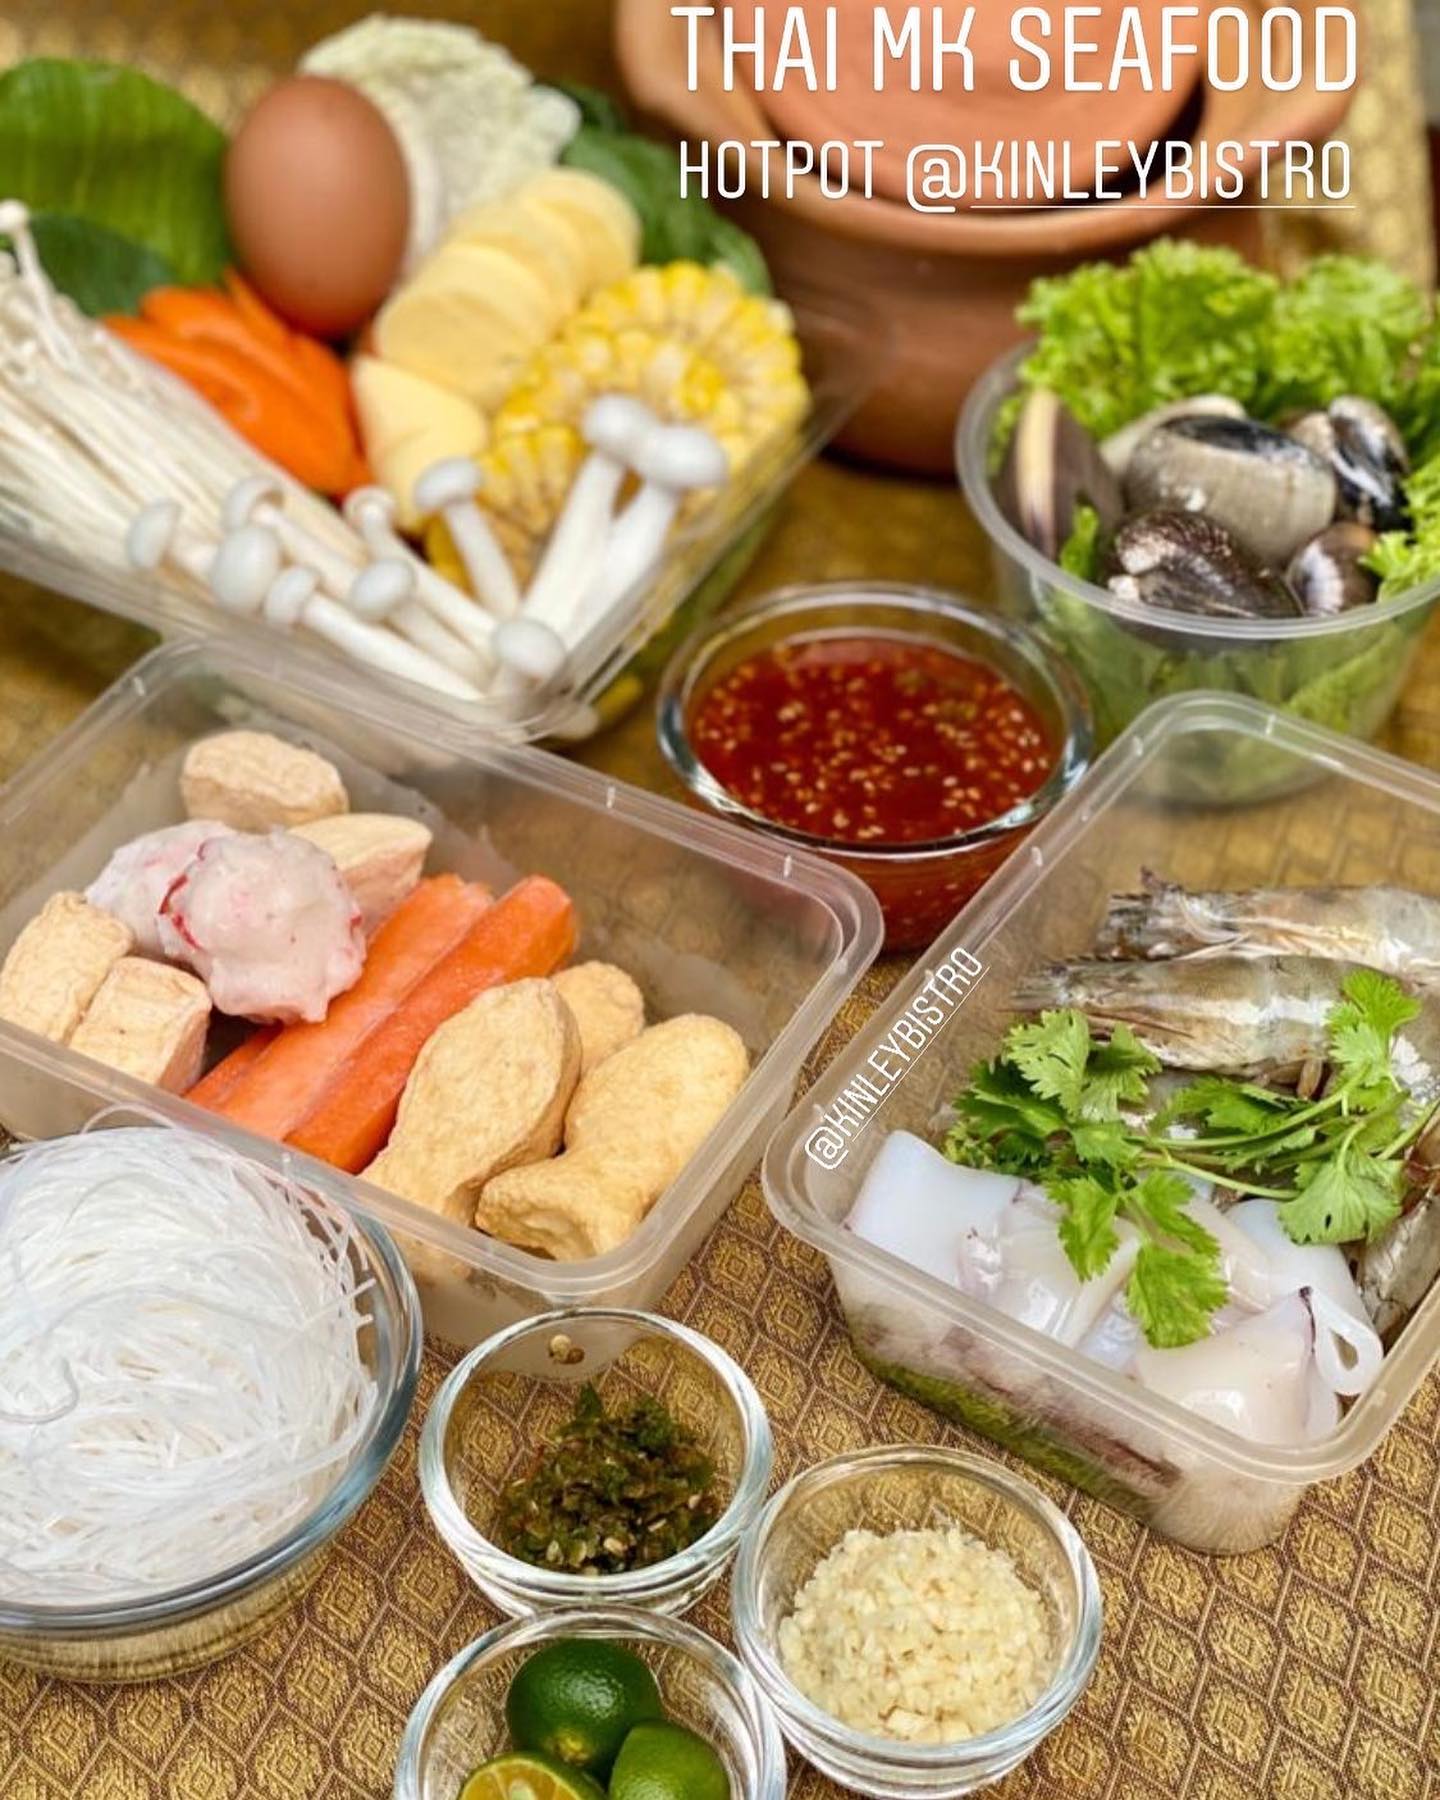 Thai MK Suki Style “SEAFOOD” HOTPOT set @KinleyBistro
Tersedia untuk Hari Kamis 07 Mei 2020

Porsi cukup untuk 2-3 dewasa
Paket termasuk:
1. Pilihan sop “TOMYUM”  atau “Japanese Dashi” soup base 2litre
2. Mixed sayuran vegetables/mushrooms/tofu
3. 14 pcs of mixed meatballs (bakso)
4. 150g udang segar
5. 100g fresh cumi cumi
6. 400g fresh clams/kepah
7. 100g tanghoon
8. Fresh chillis/garlic/lime
9. 250ml signature Thai suki Dipping sauce
10. FREE 1 garlic fried rice senilai rp 18.000

Semua sudah siap saji, sudah bersih, hanya panaskan sop tersedia di panci dan masukan semua bahan tersedia kedalam
Wajib coba dengan cabe dan saus suki Thai @KinleyBistro

Mudah dan SEHAT buat sekeluarga. 
Harga: Rp 215.000/paket
***stok terbatas dengan jumlah bahan segar yang tersedia*** Pesan via whatsapp 0815-45-595959

Pesanan di packing dengan aman dan akan di cable tie/security lock
Pengiriman dari central kitchen yang hyginis, bersih dan terjaga
Gosend dari CBD Polonia area, ditanggung pembeli dan dibayar langsung ke gojek

Pembayaran makanan@via transfer BCA atau OVO dinomor 0815-45-595959

Bisa juga tambah pesan pulut mangga, pulut durian, thai milktea/lemongrass

Silakan pesan via WA dengan format:
Nama Penerima:
Alamat:
Nomor HP penerima:
Menu soup dan jumlah yg dipesan:
Ke nomor WA 0815-45-595959